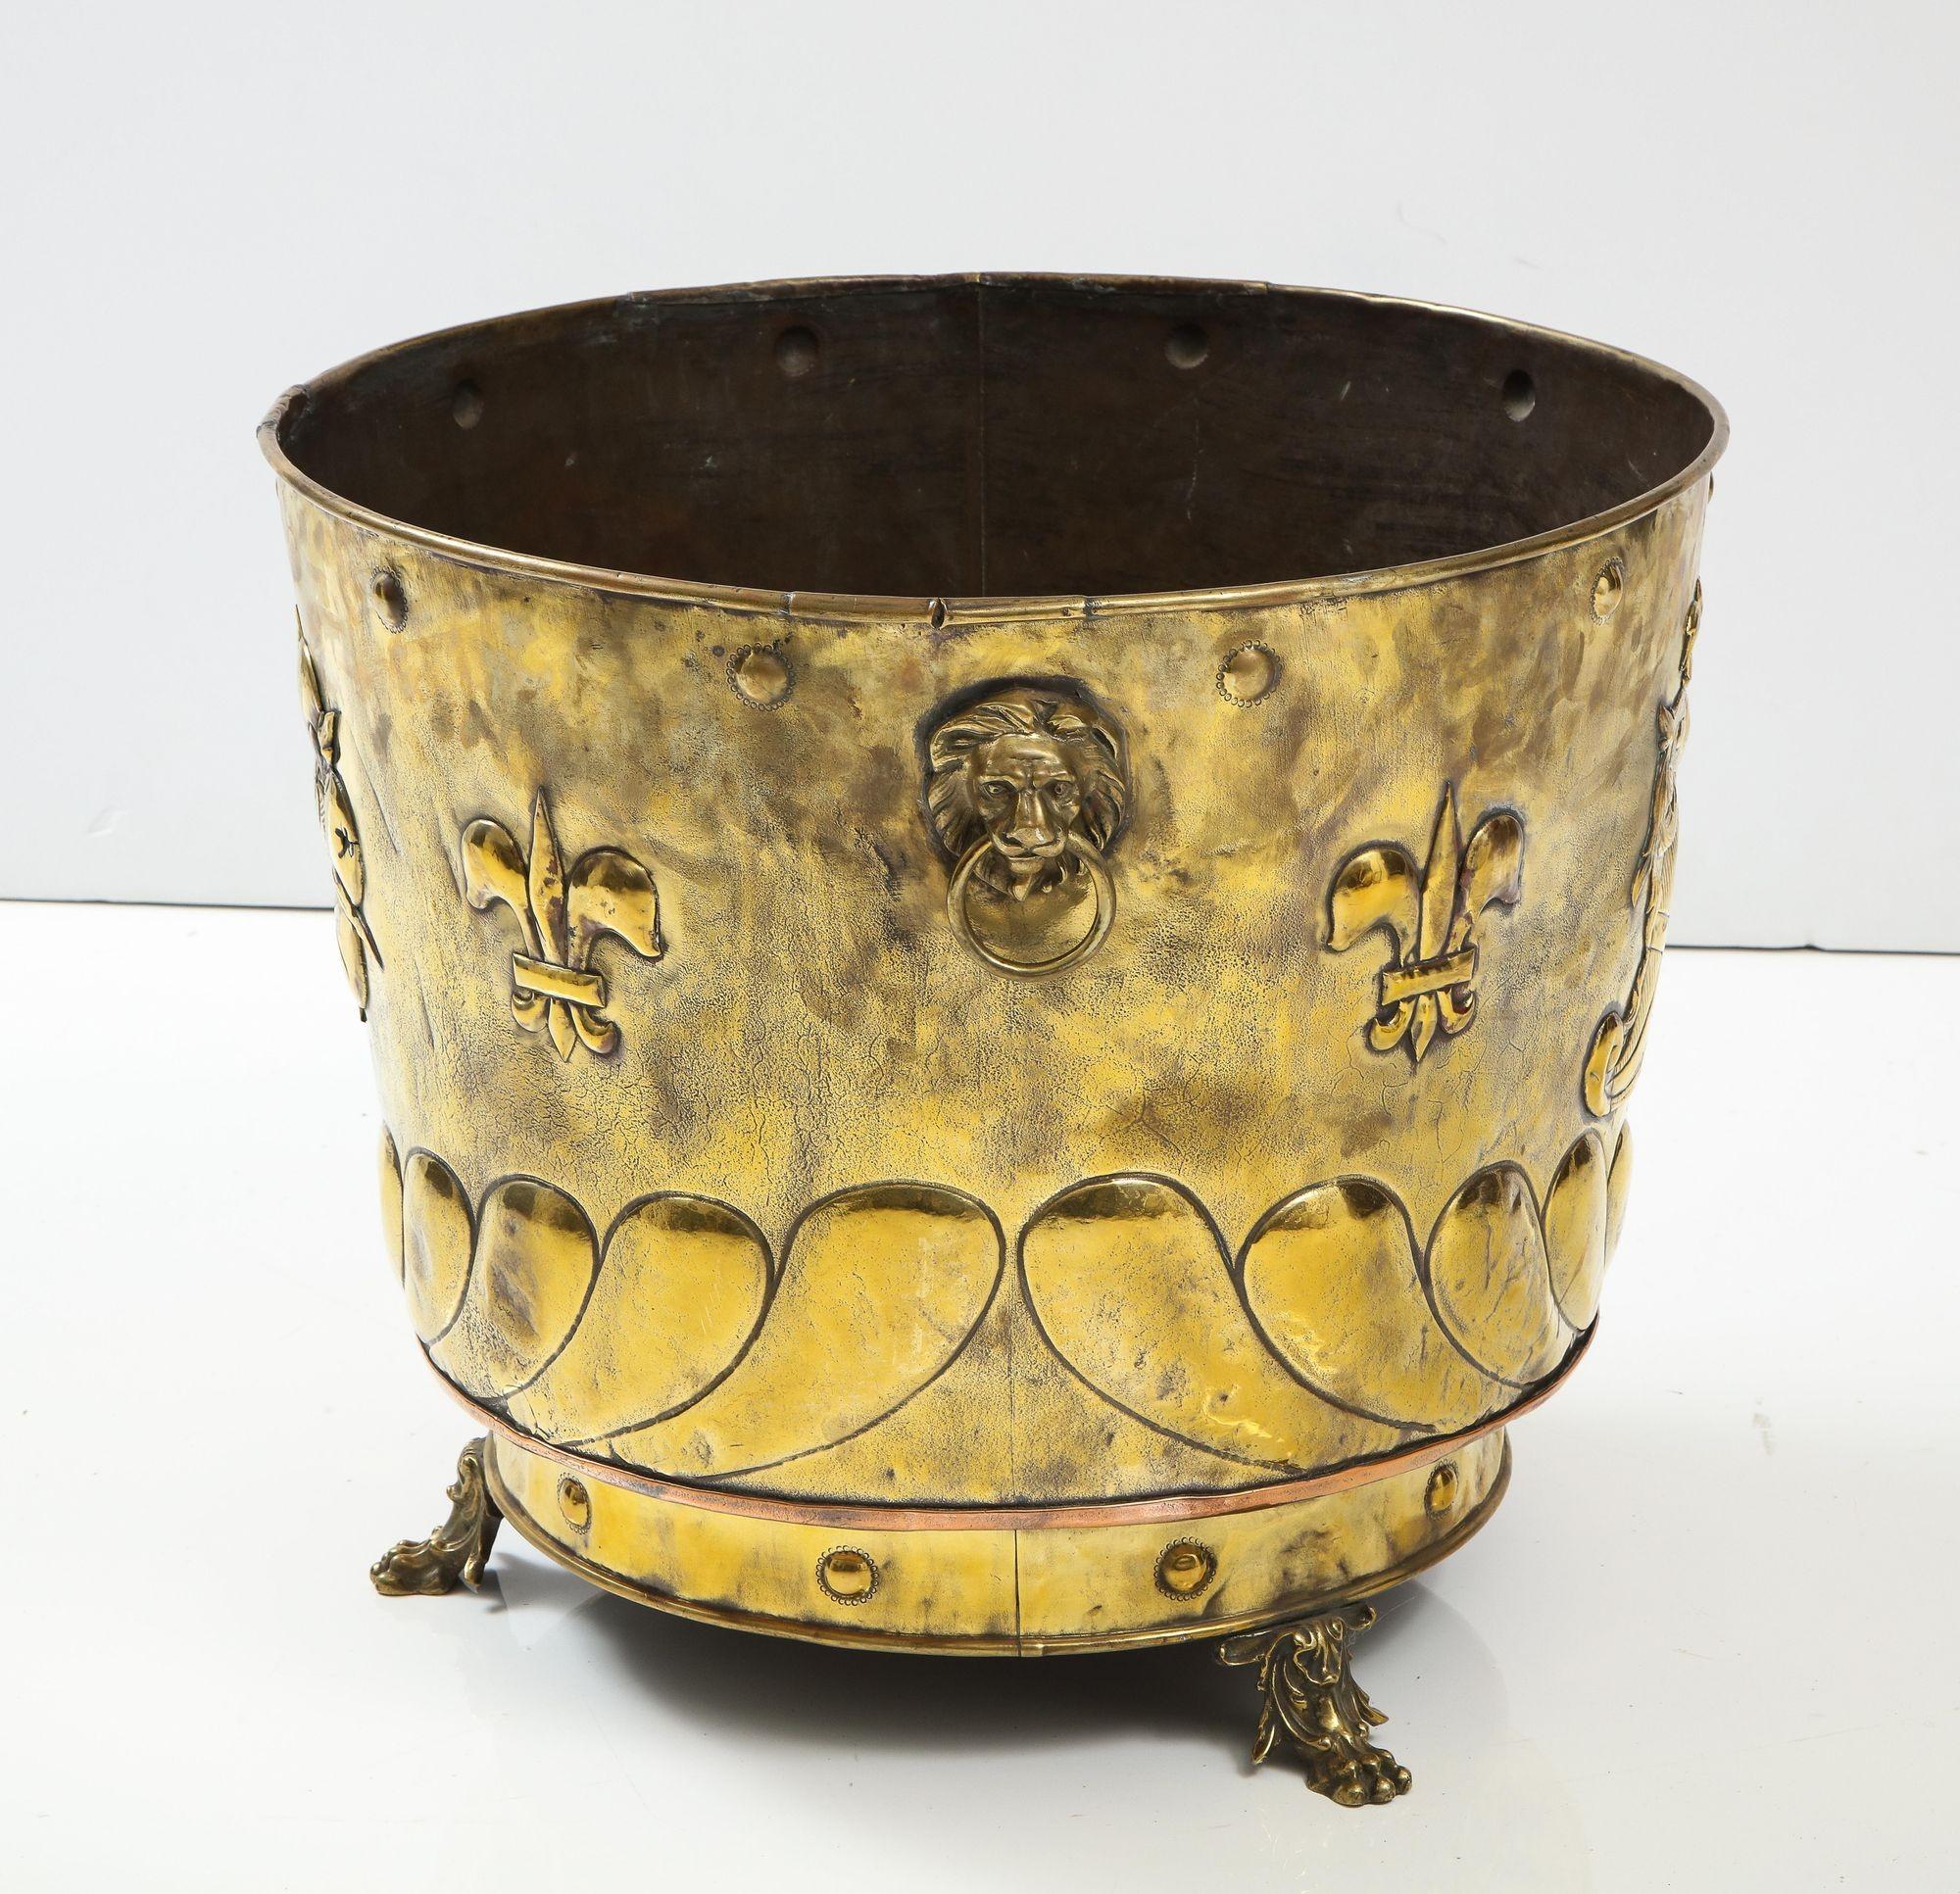 Repoussé Large Brass Cauldron with Coat of Arms